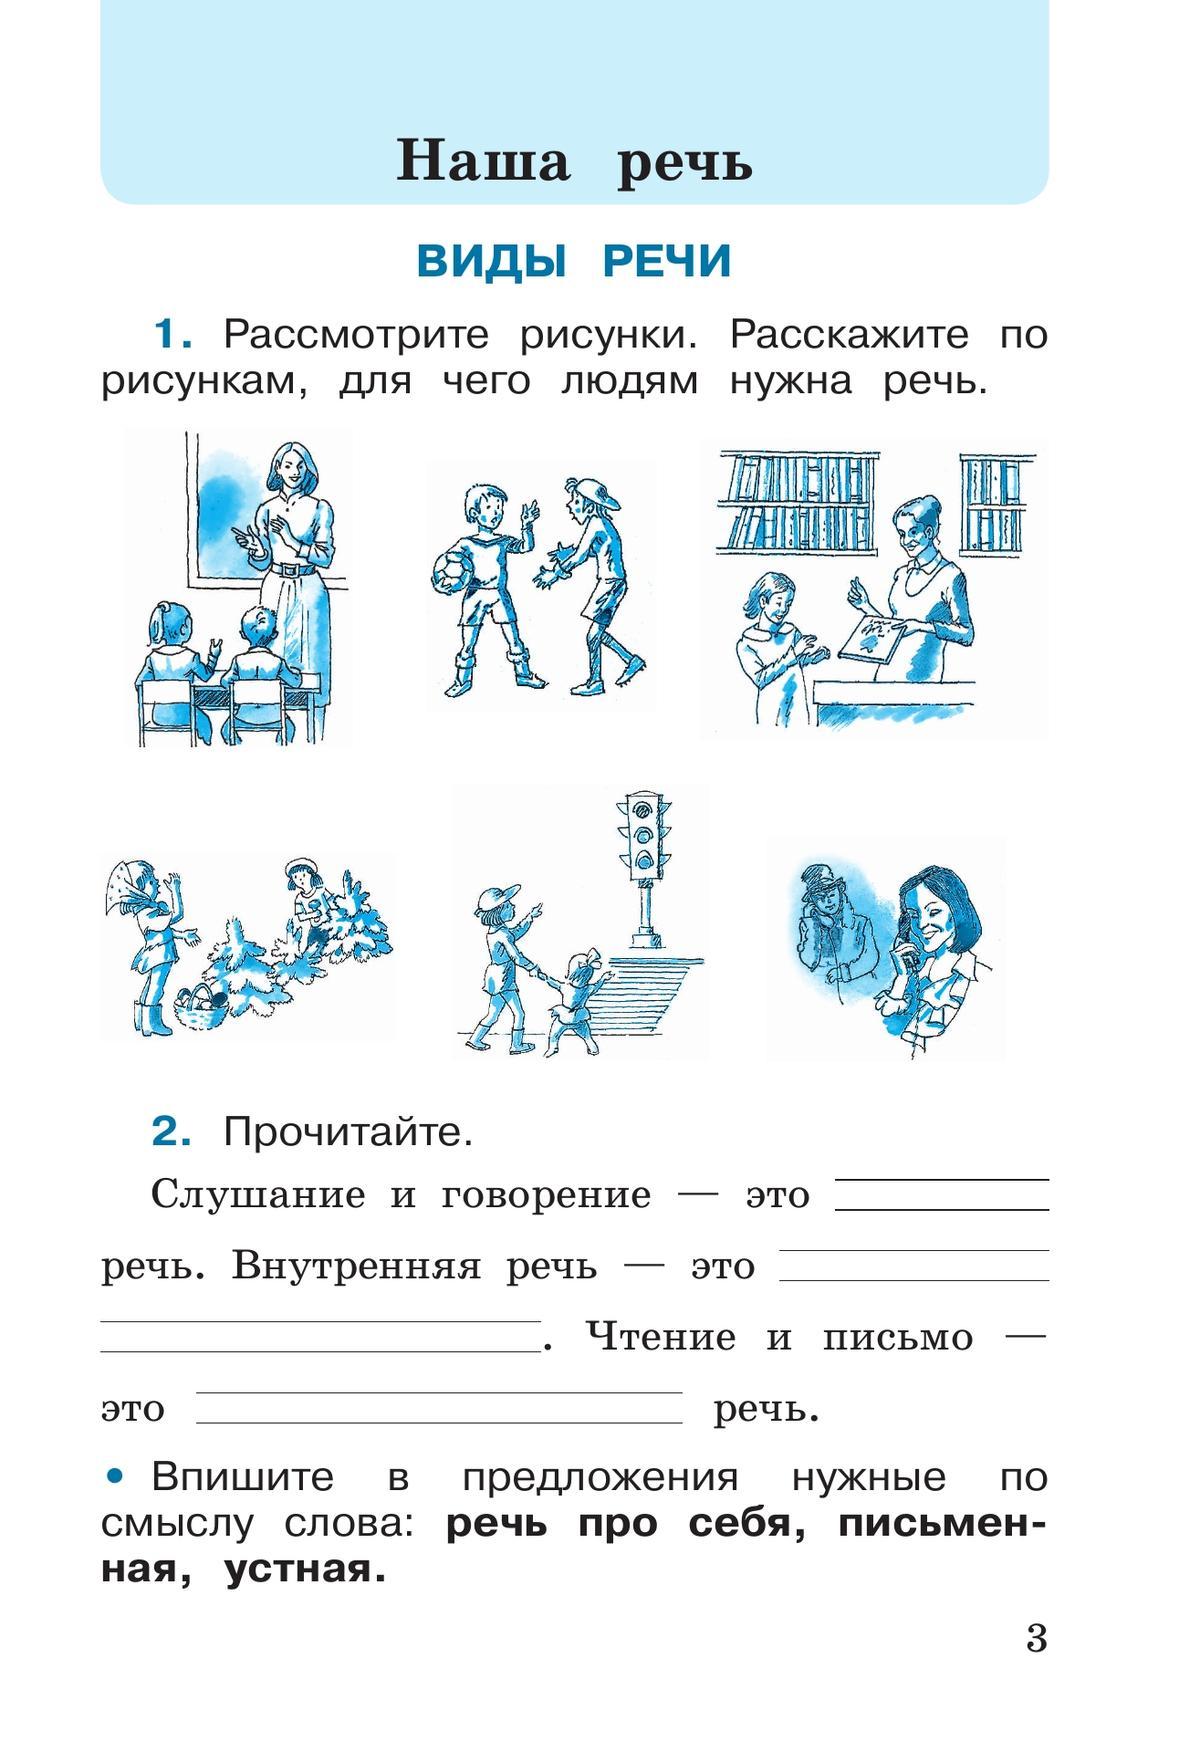 Русский язык. Рабочая тетрадь. 2 класс. В 2 частях. Часть 1 6